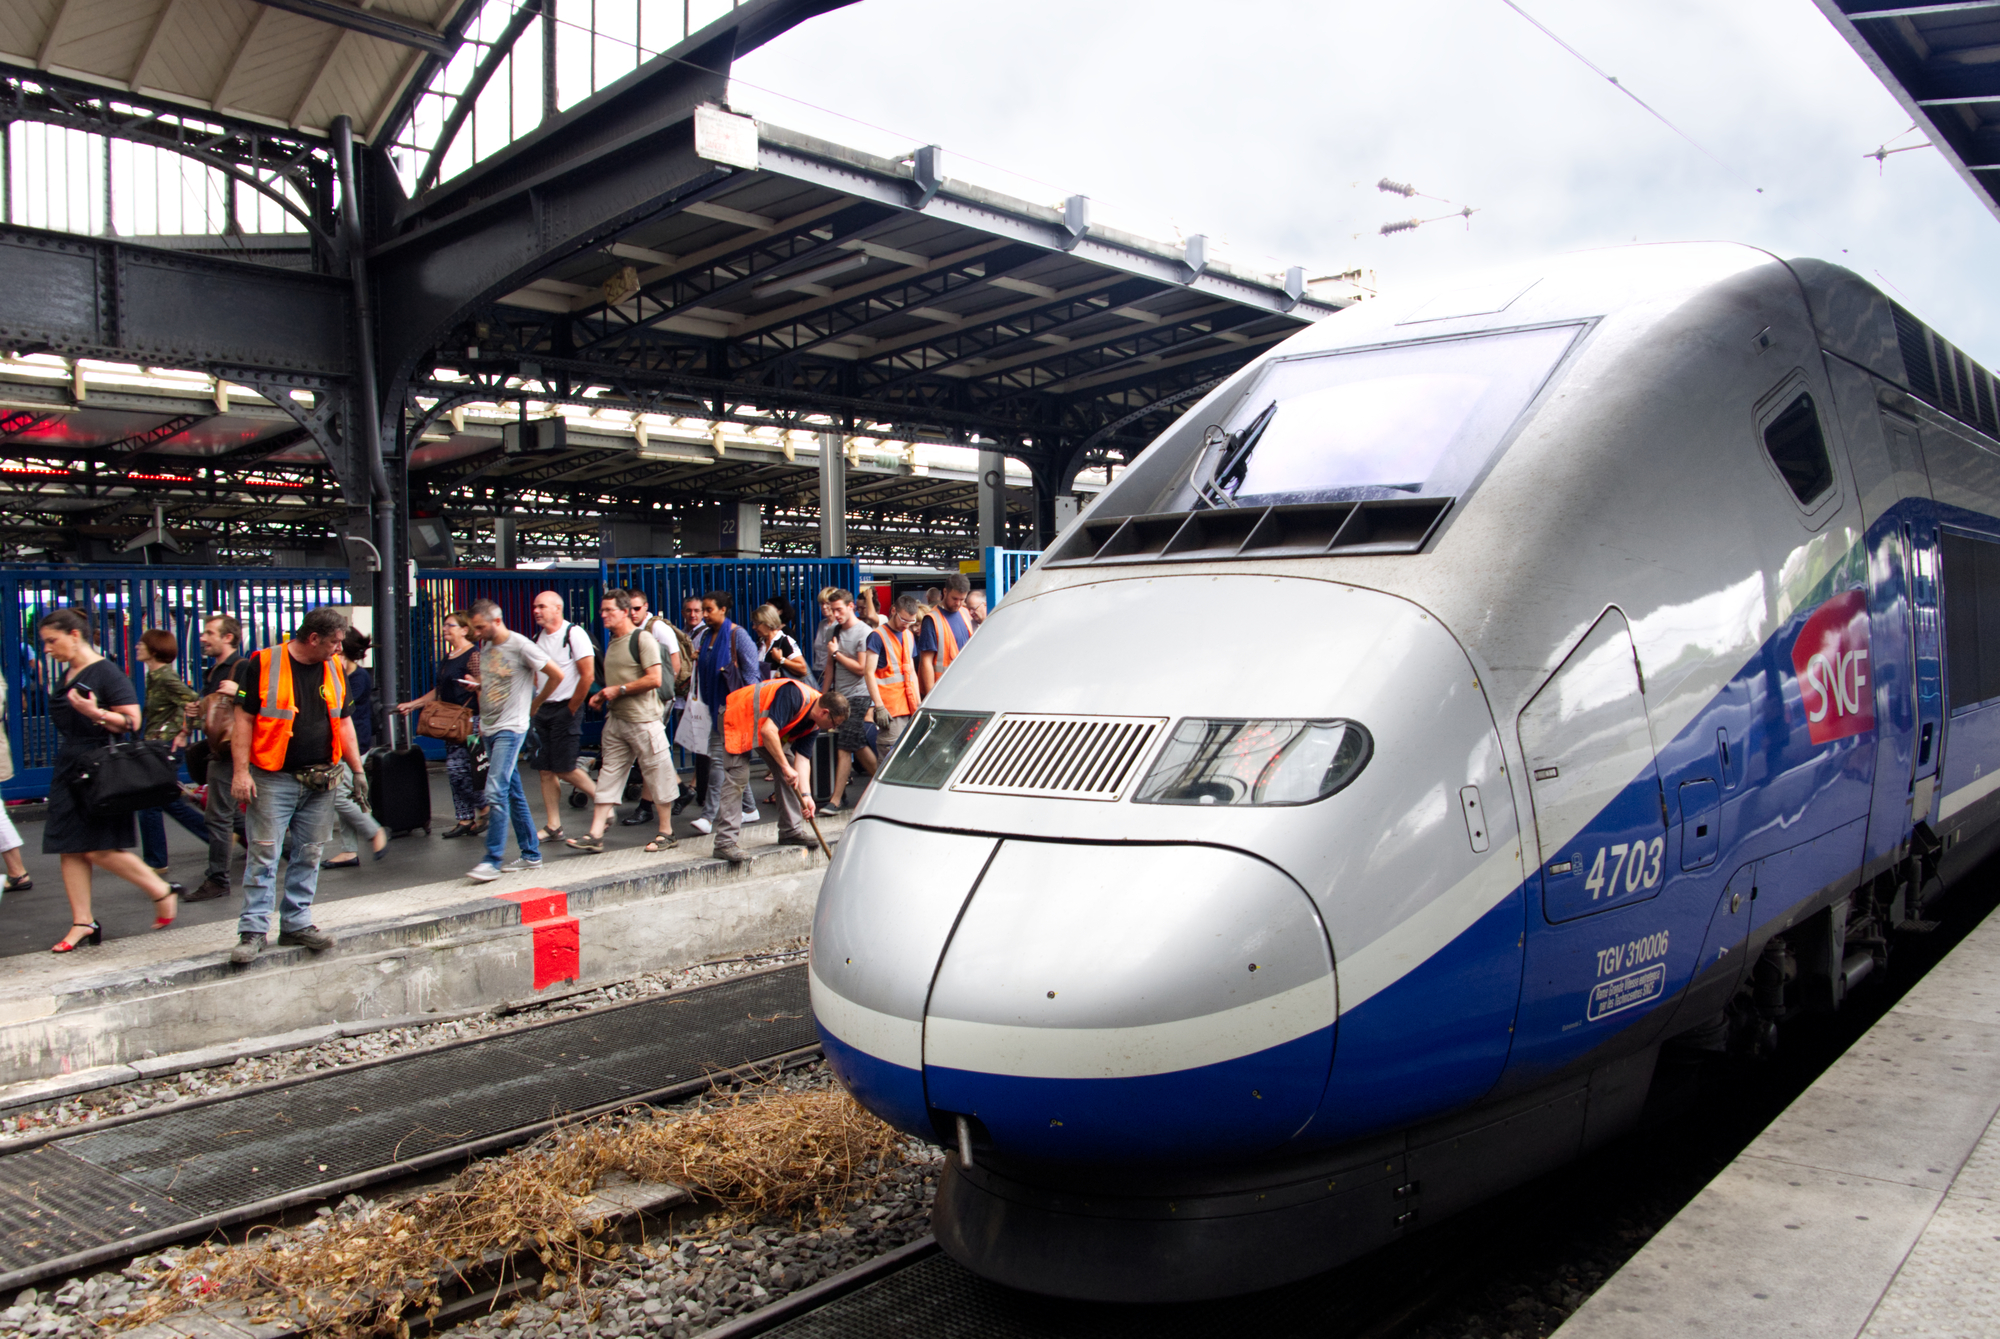 Le train monte en puissance pour les départs en week-end (©DepositPhoto)